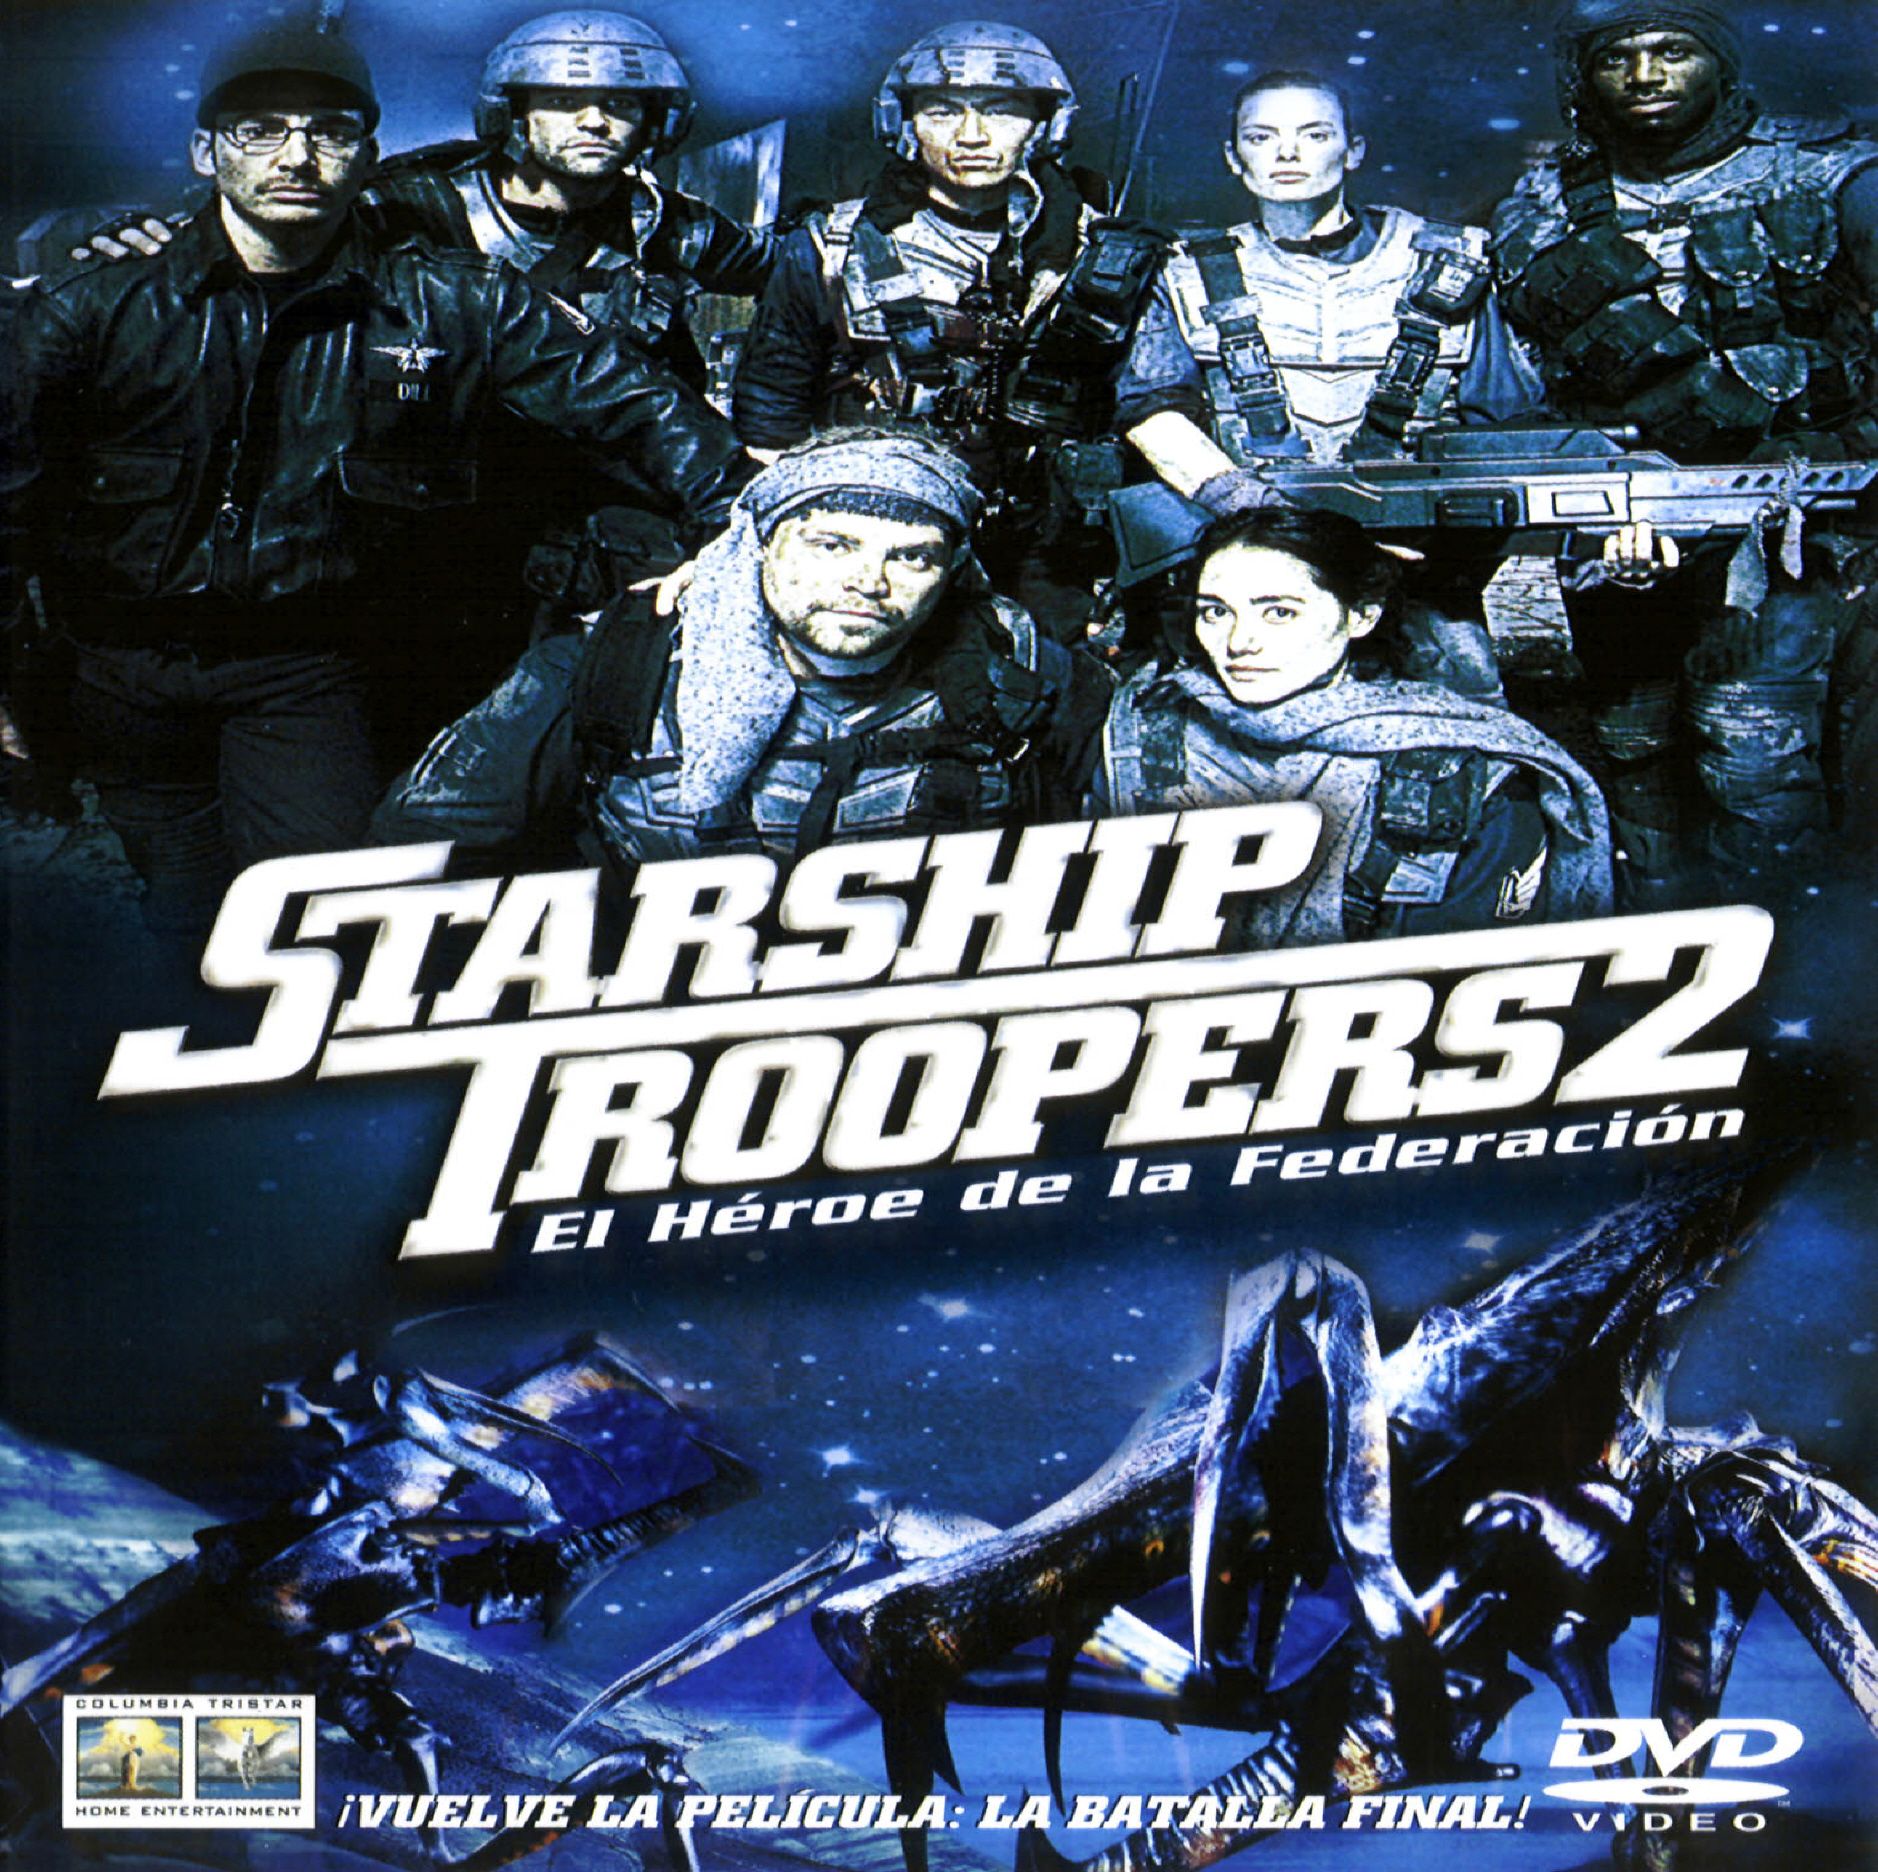 Starship Troopers 2 – El Héroe de la Federación (2004)